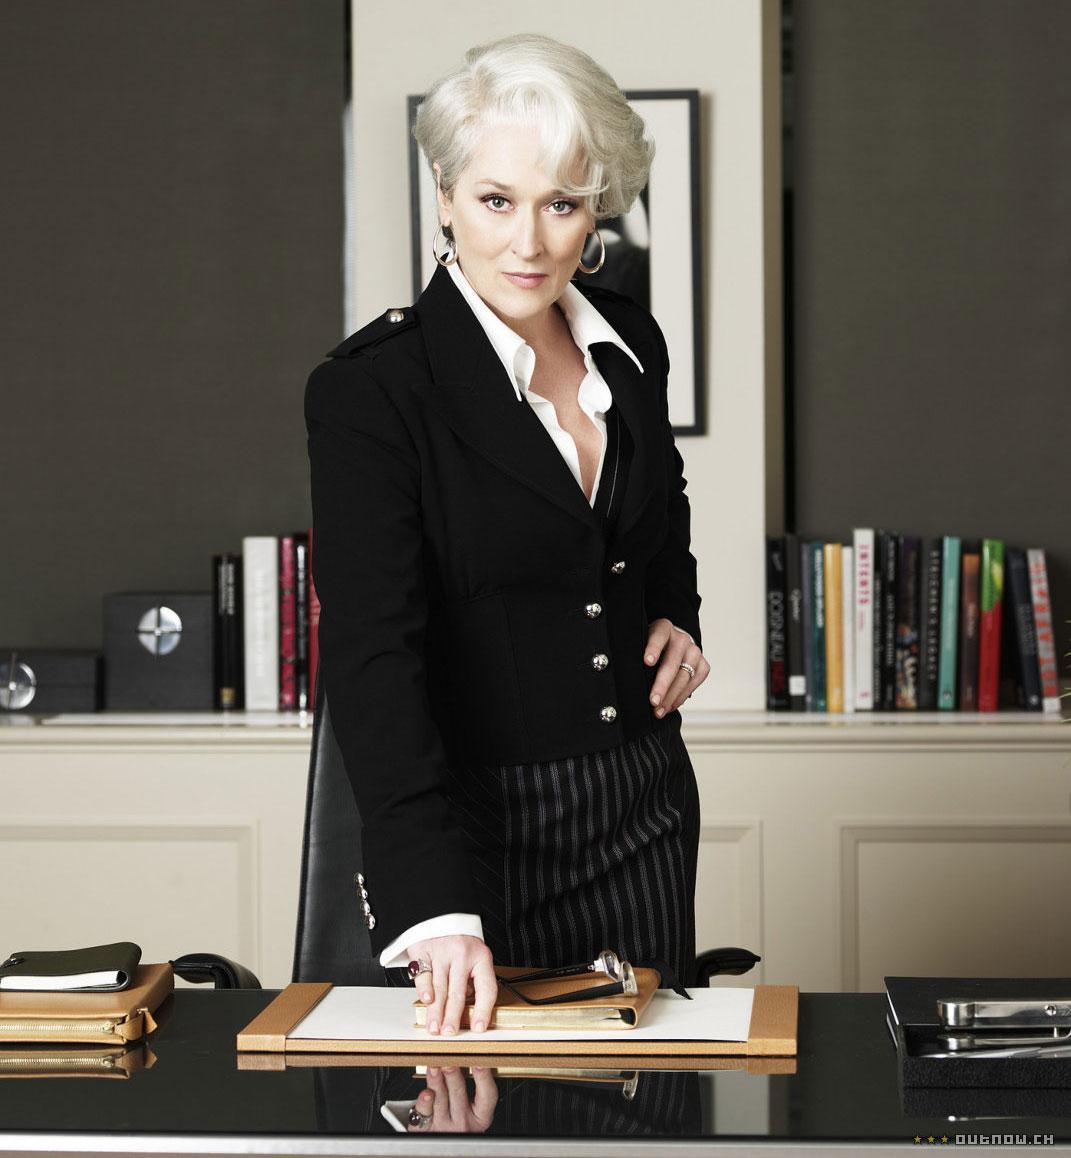 10 Women On Their Female Bosses 